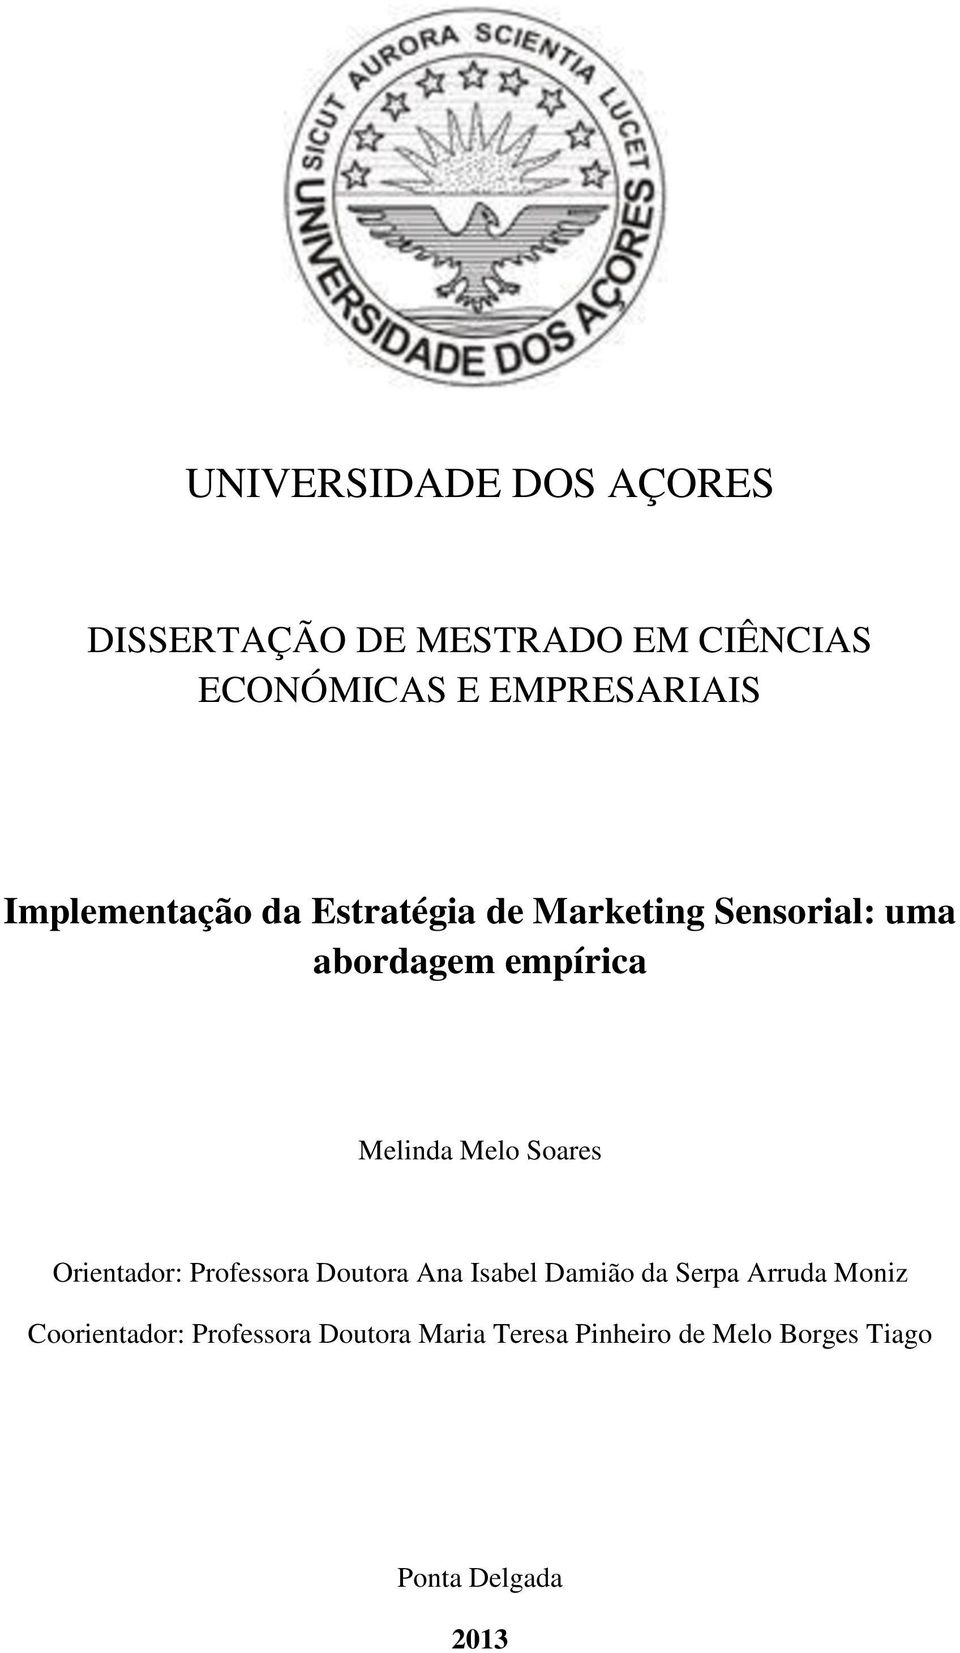 Melo Soares Orientador: Professora Doutora Ana Isabel Damião da Serpa Arruda Moniz